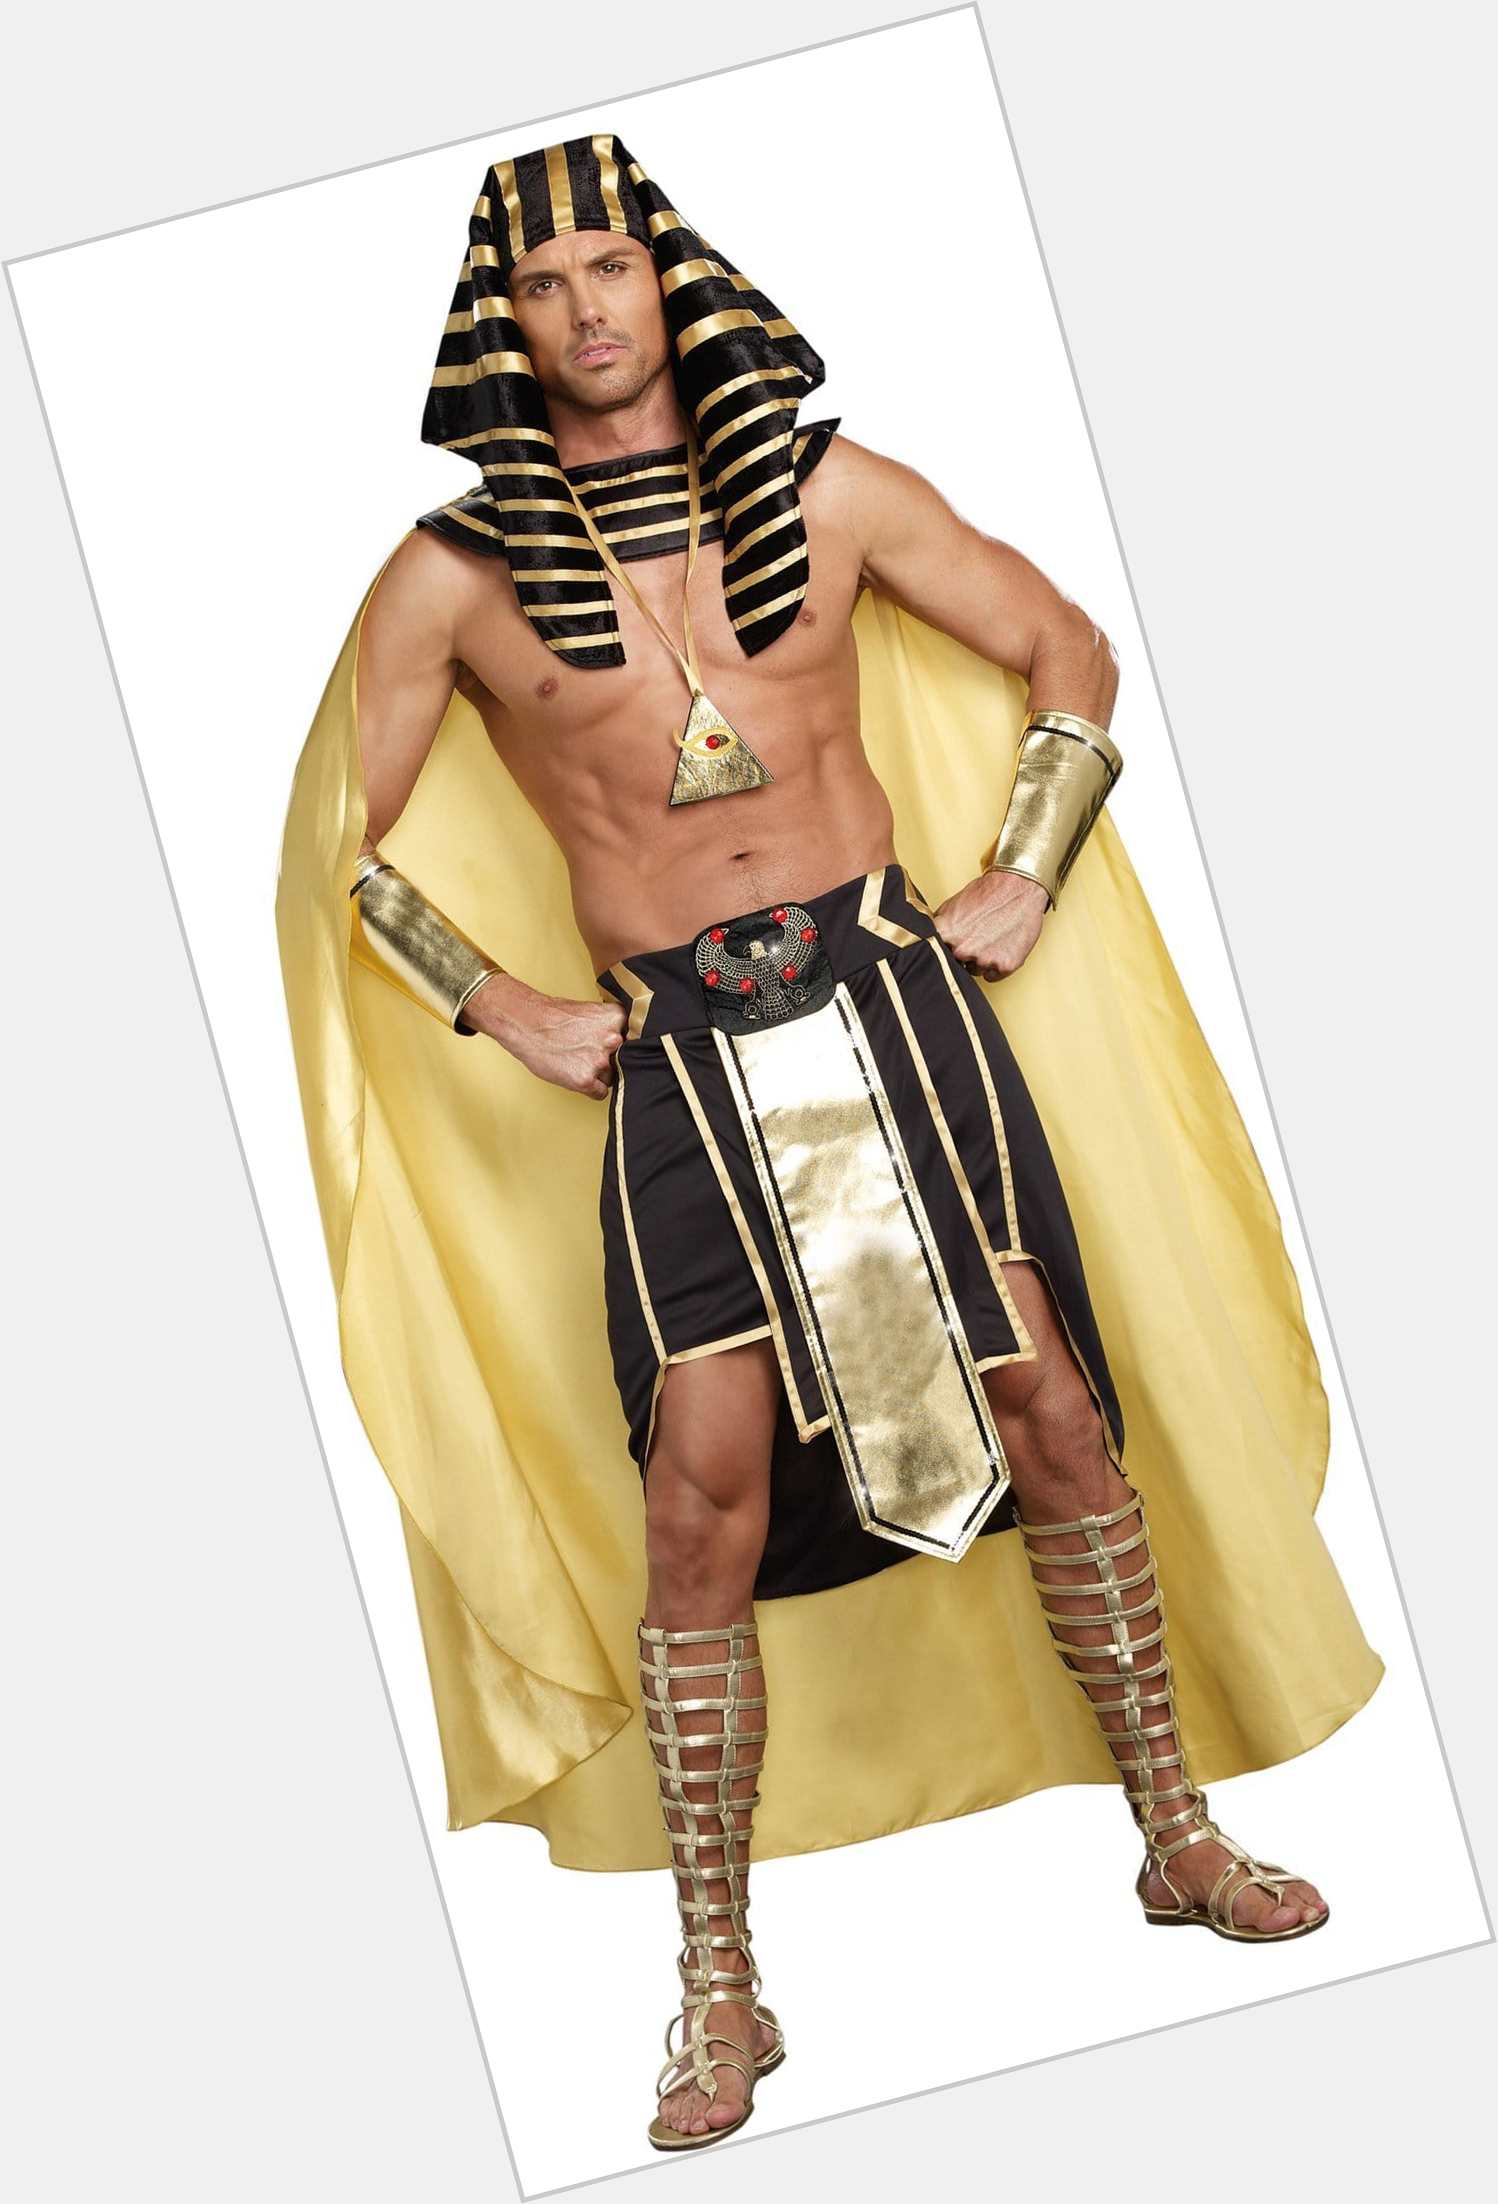 <a href="/hot-men/king-tutankhamen/is-he-what-tutankhamun-known-why-famous-pharaoh">King Tutankhamen</a>  black hair & hairstyles